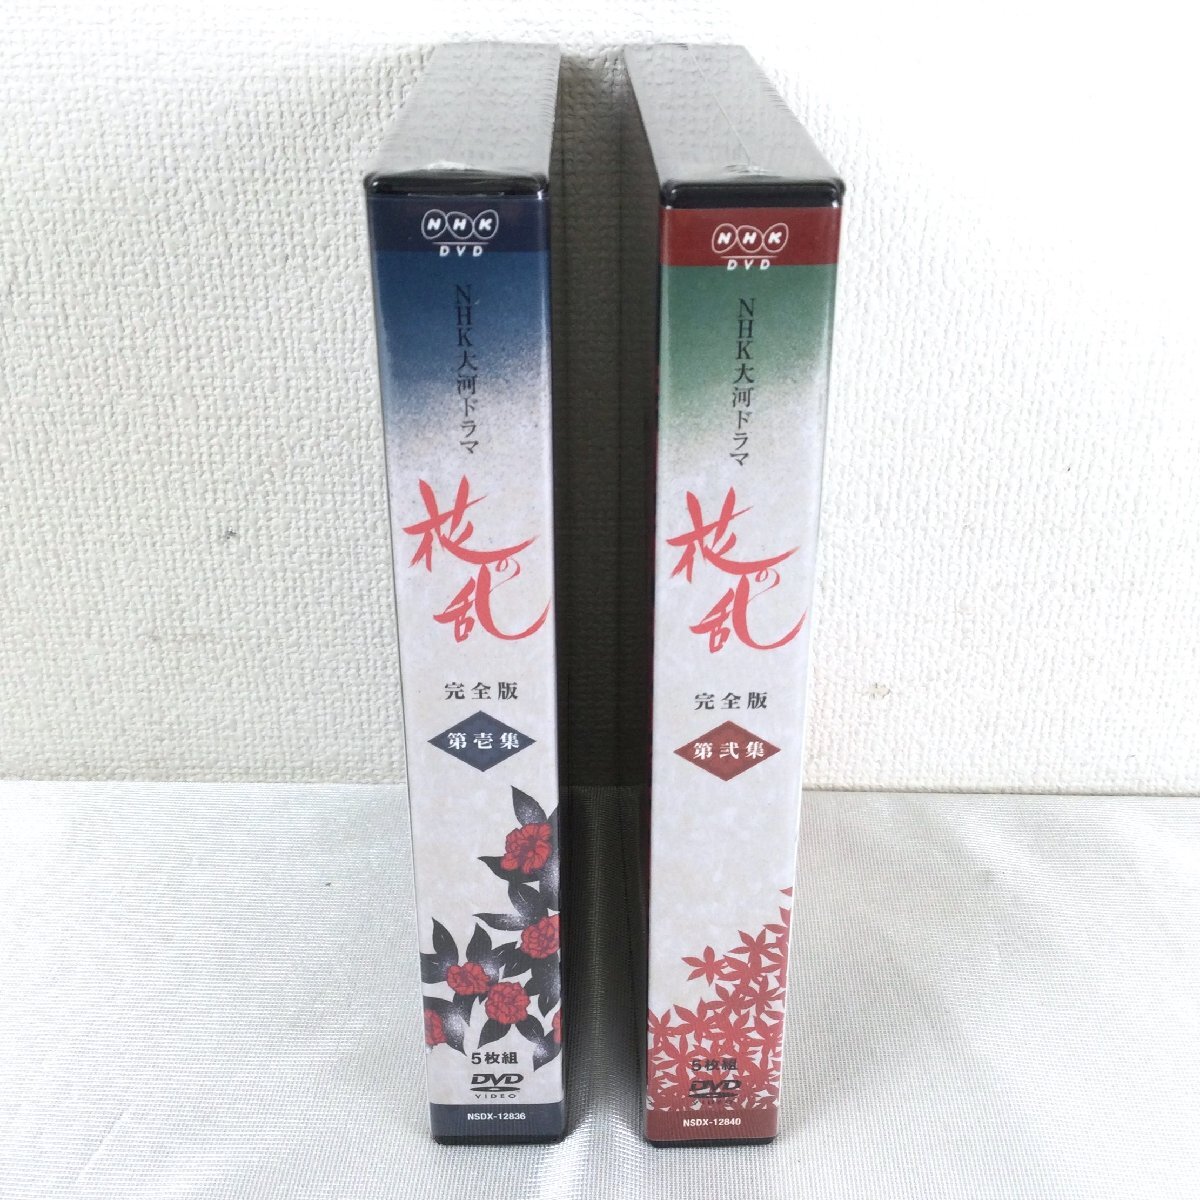 1205[ не использовался товар ] NHK большой река драма цветок. .DVD no. . сборник * no. . сборник комплект три рисовое поле .. Ichikawa . 10 .( 10 2 поколения ). магазин ... столица вставка . внутри рисовое поле . 2 ....